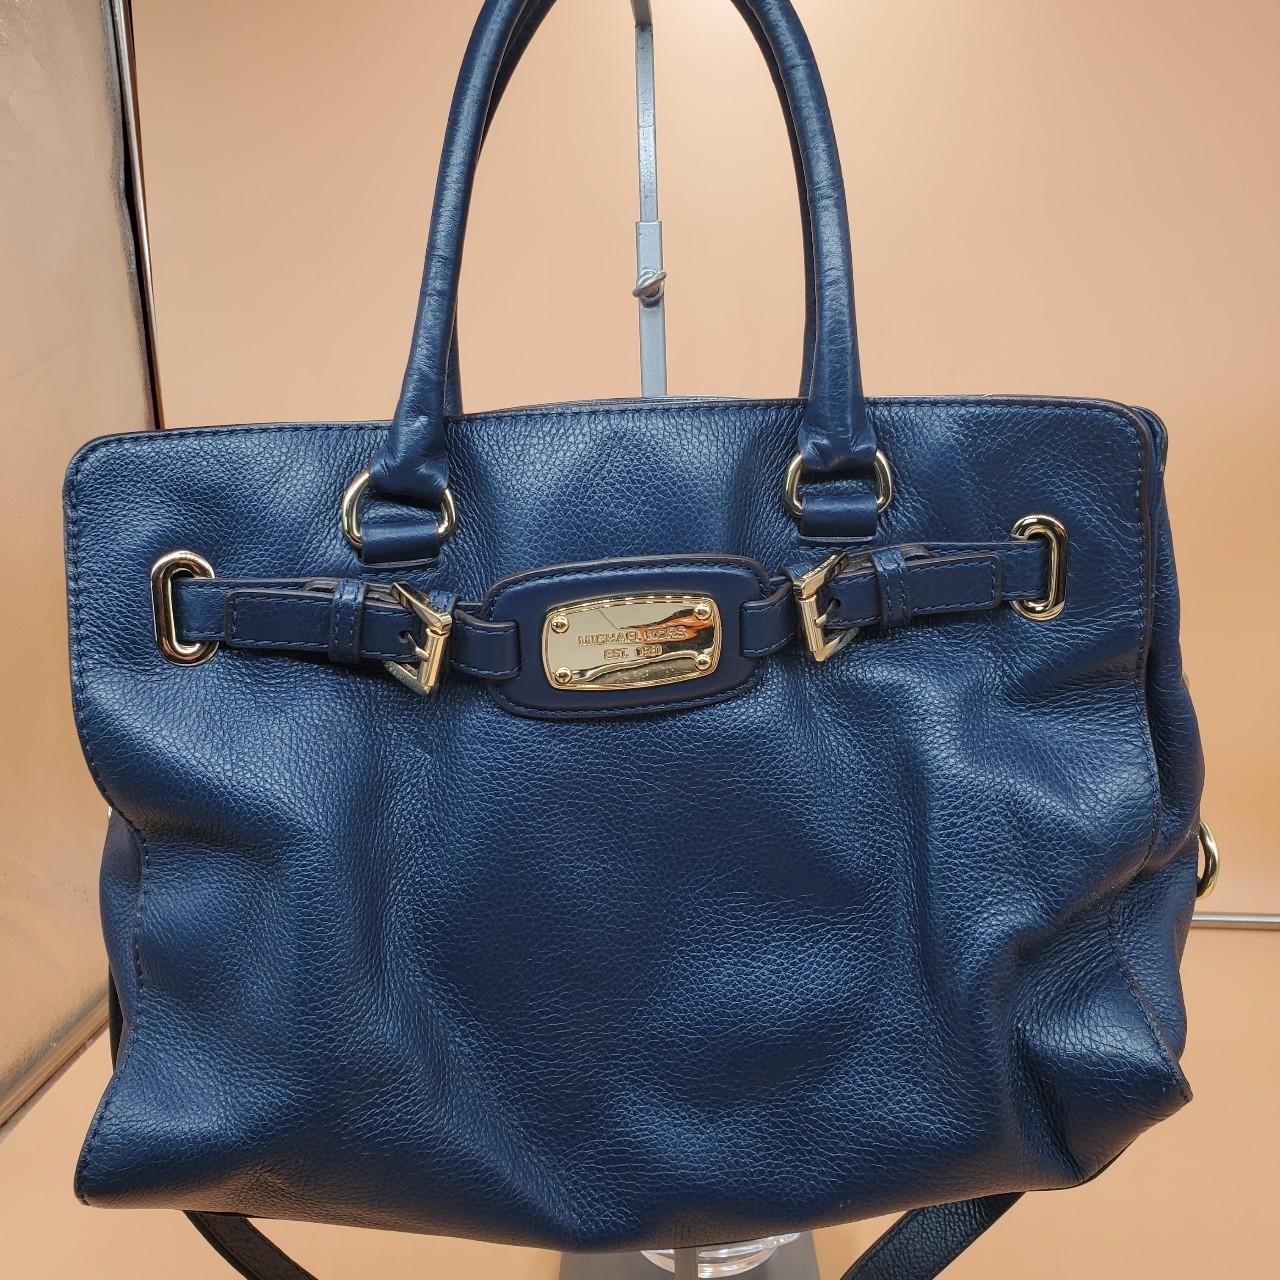 Unique royal blue Michael Kors purse